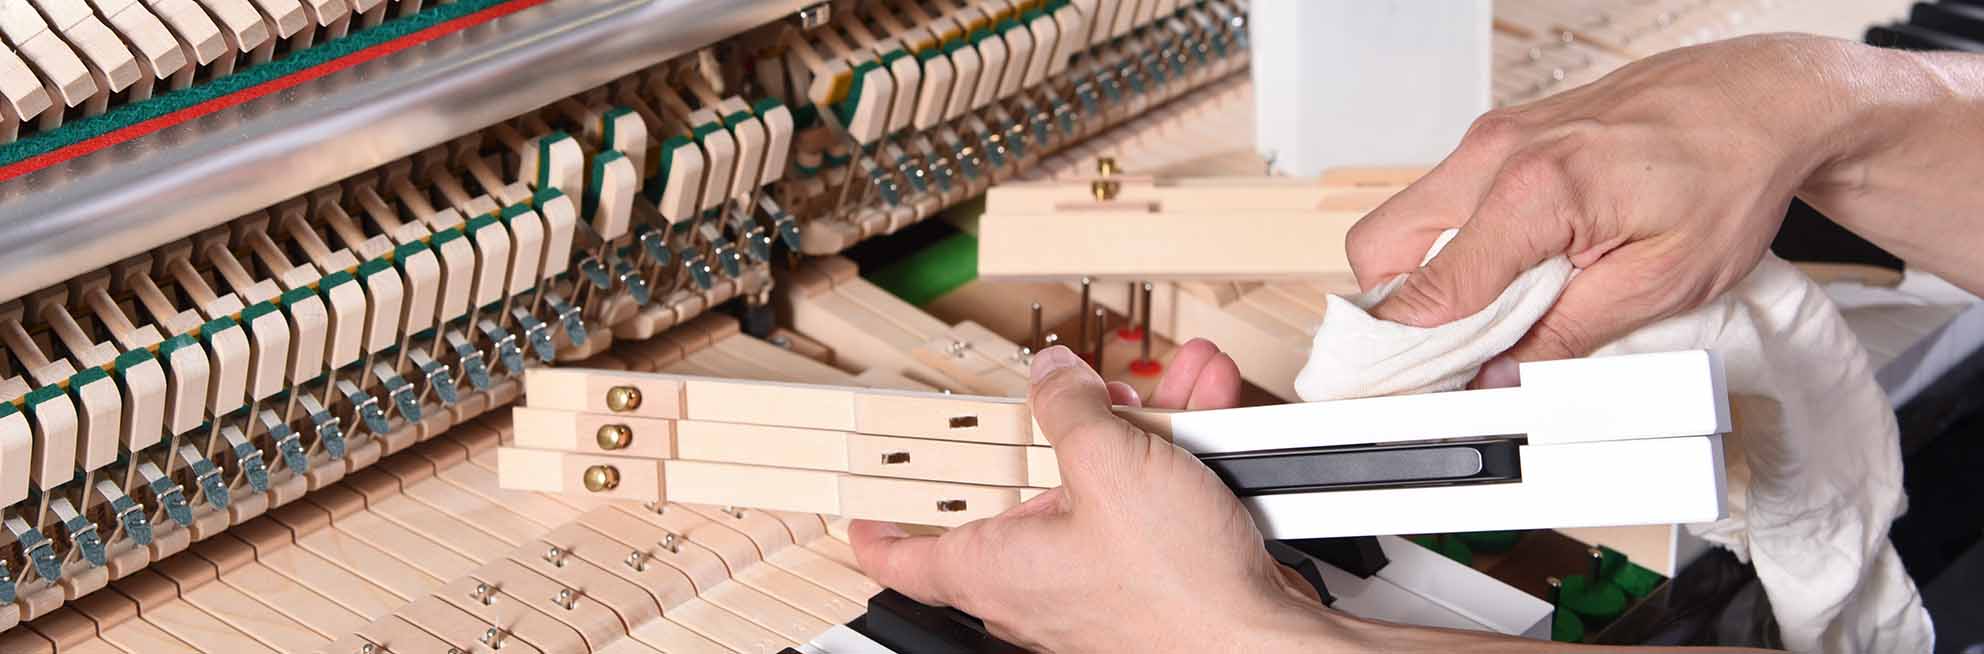 Professionelle Servicewartung für Ihr Instrument durch Klavierbauer vom Pianohaus Filipski